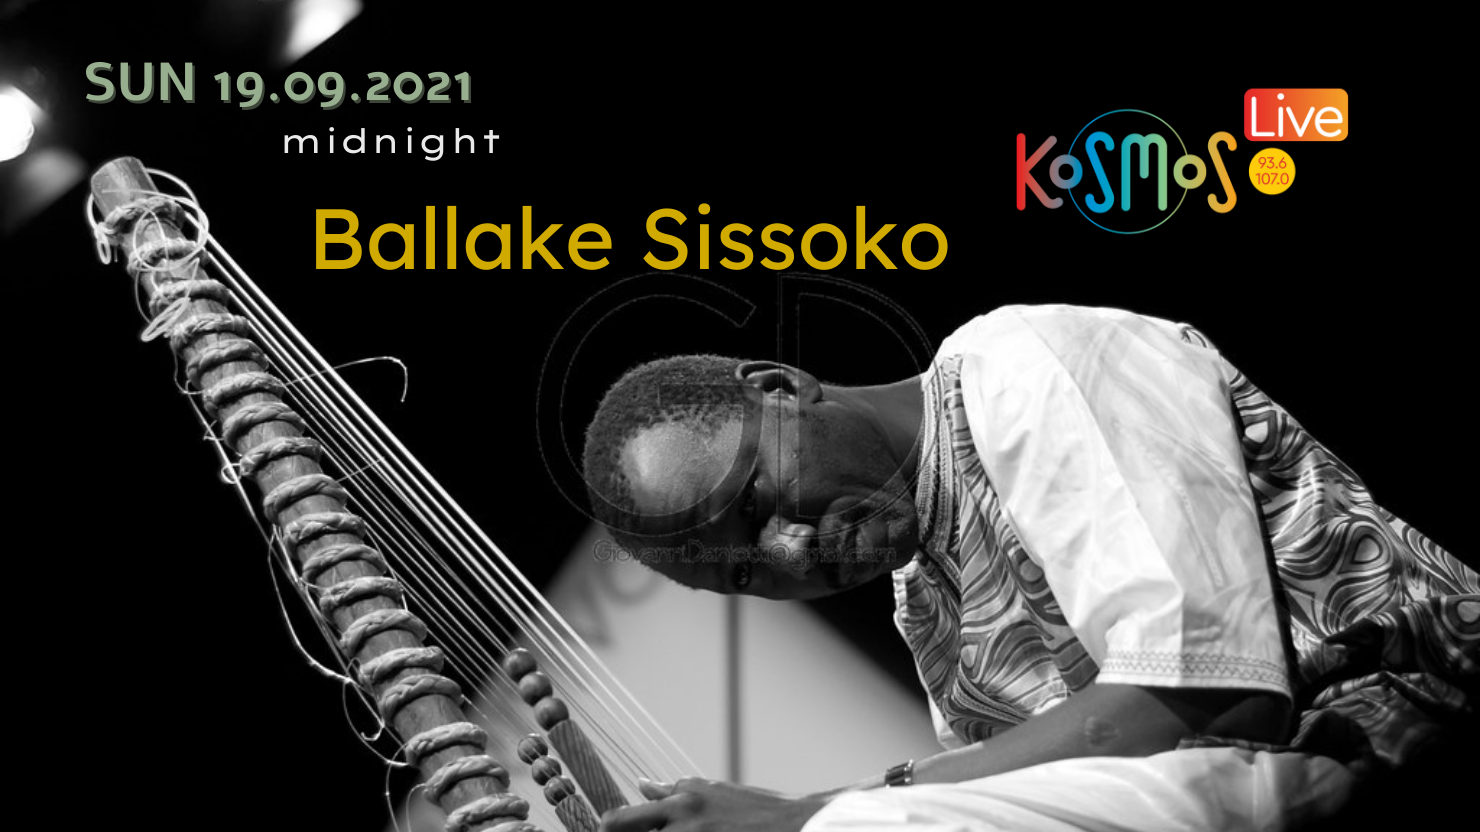 Ακούστε το live του Ballake Sissoko από το “Arènes de Lutèce” στο Παρίσι (Μεταδόθηκε: 19.09.2021)